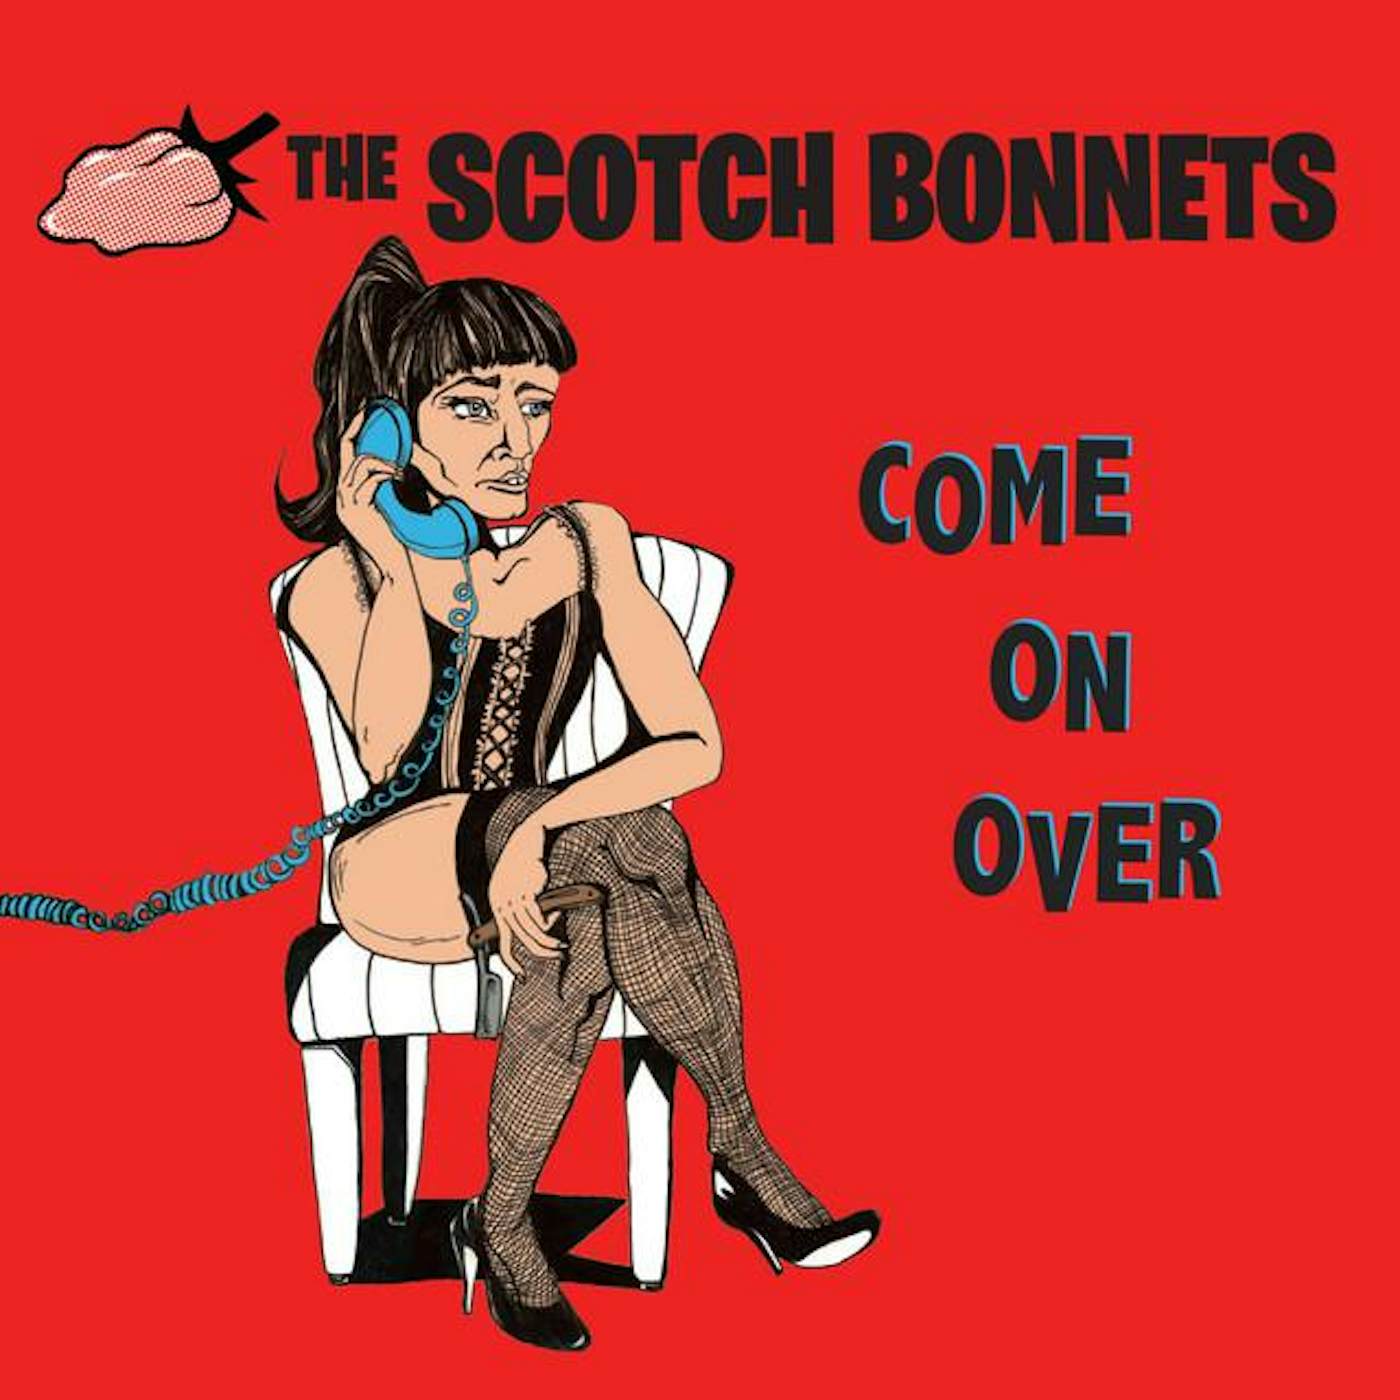 The Scotch Bonnets